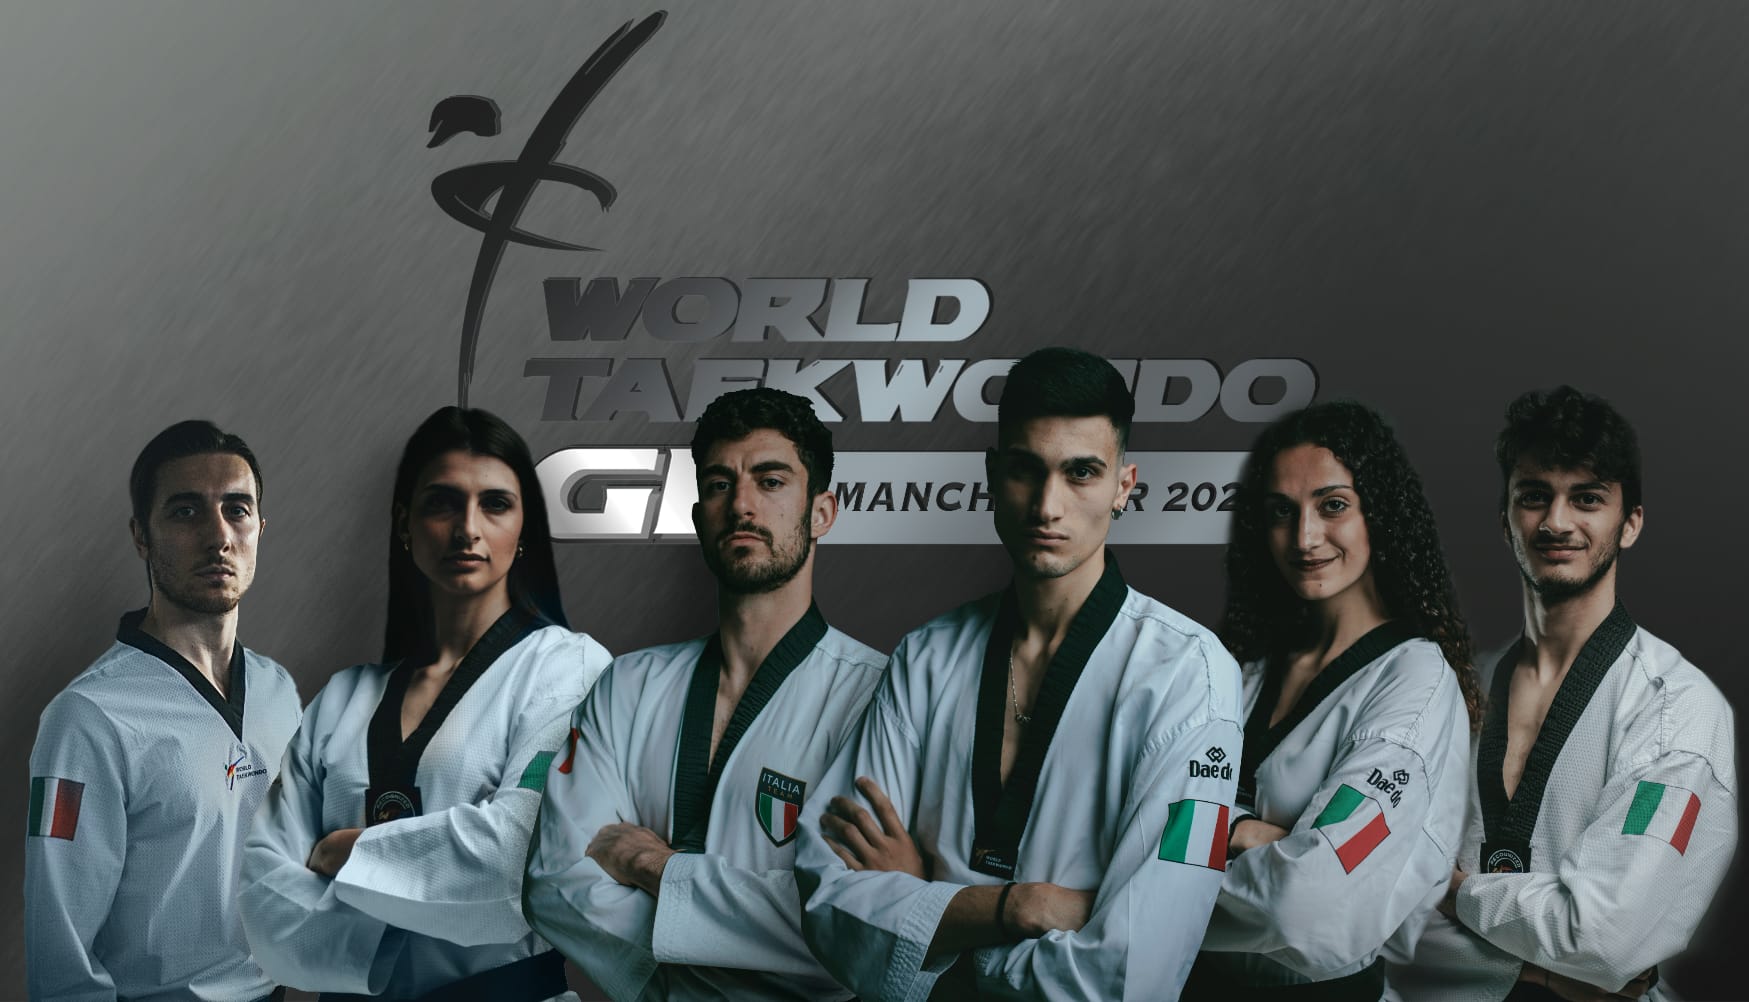 World Taekwondo Grand Prix Manchester 2022